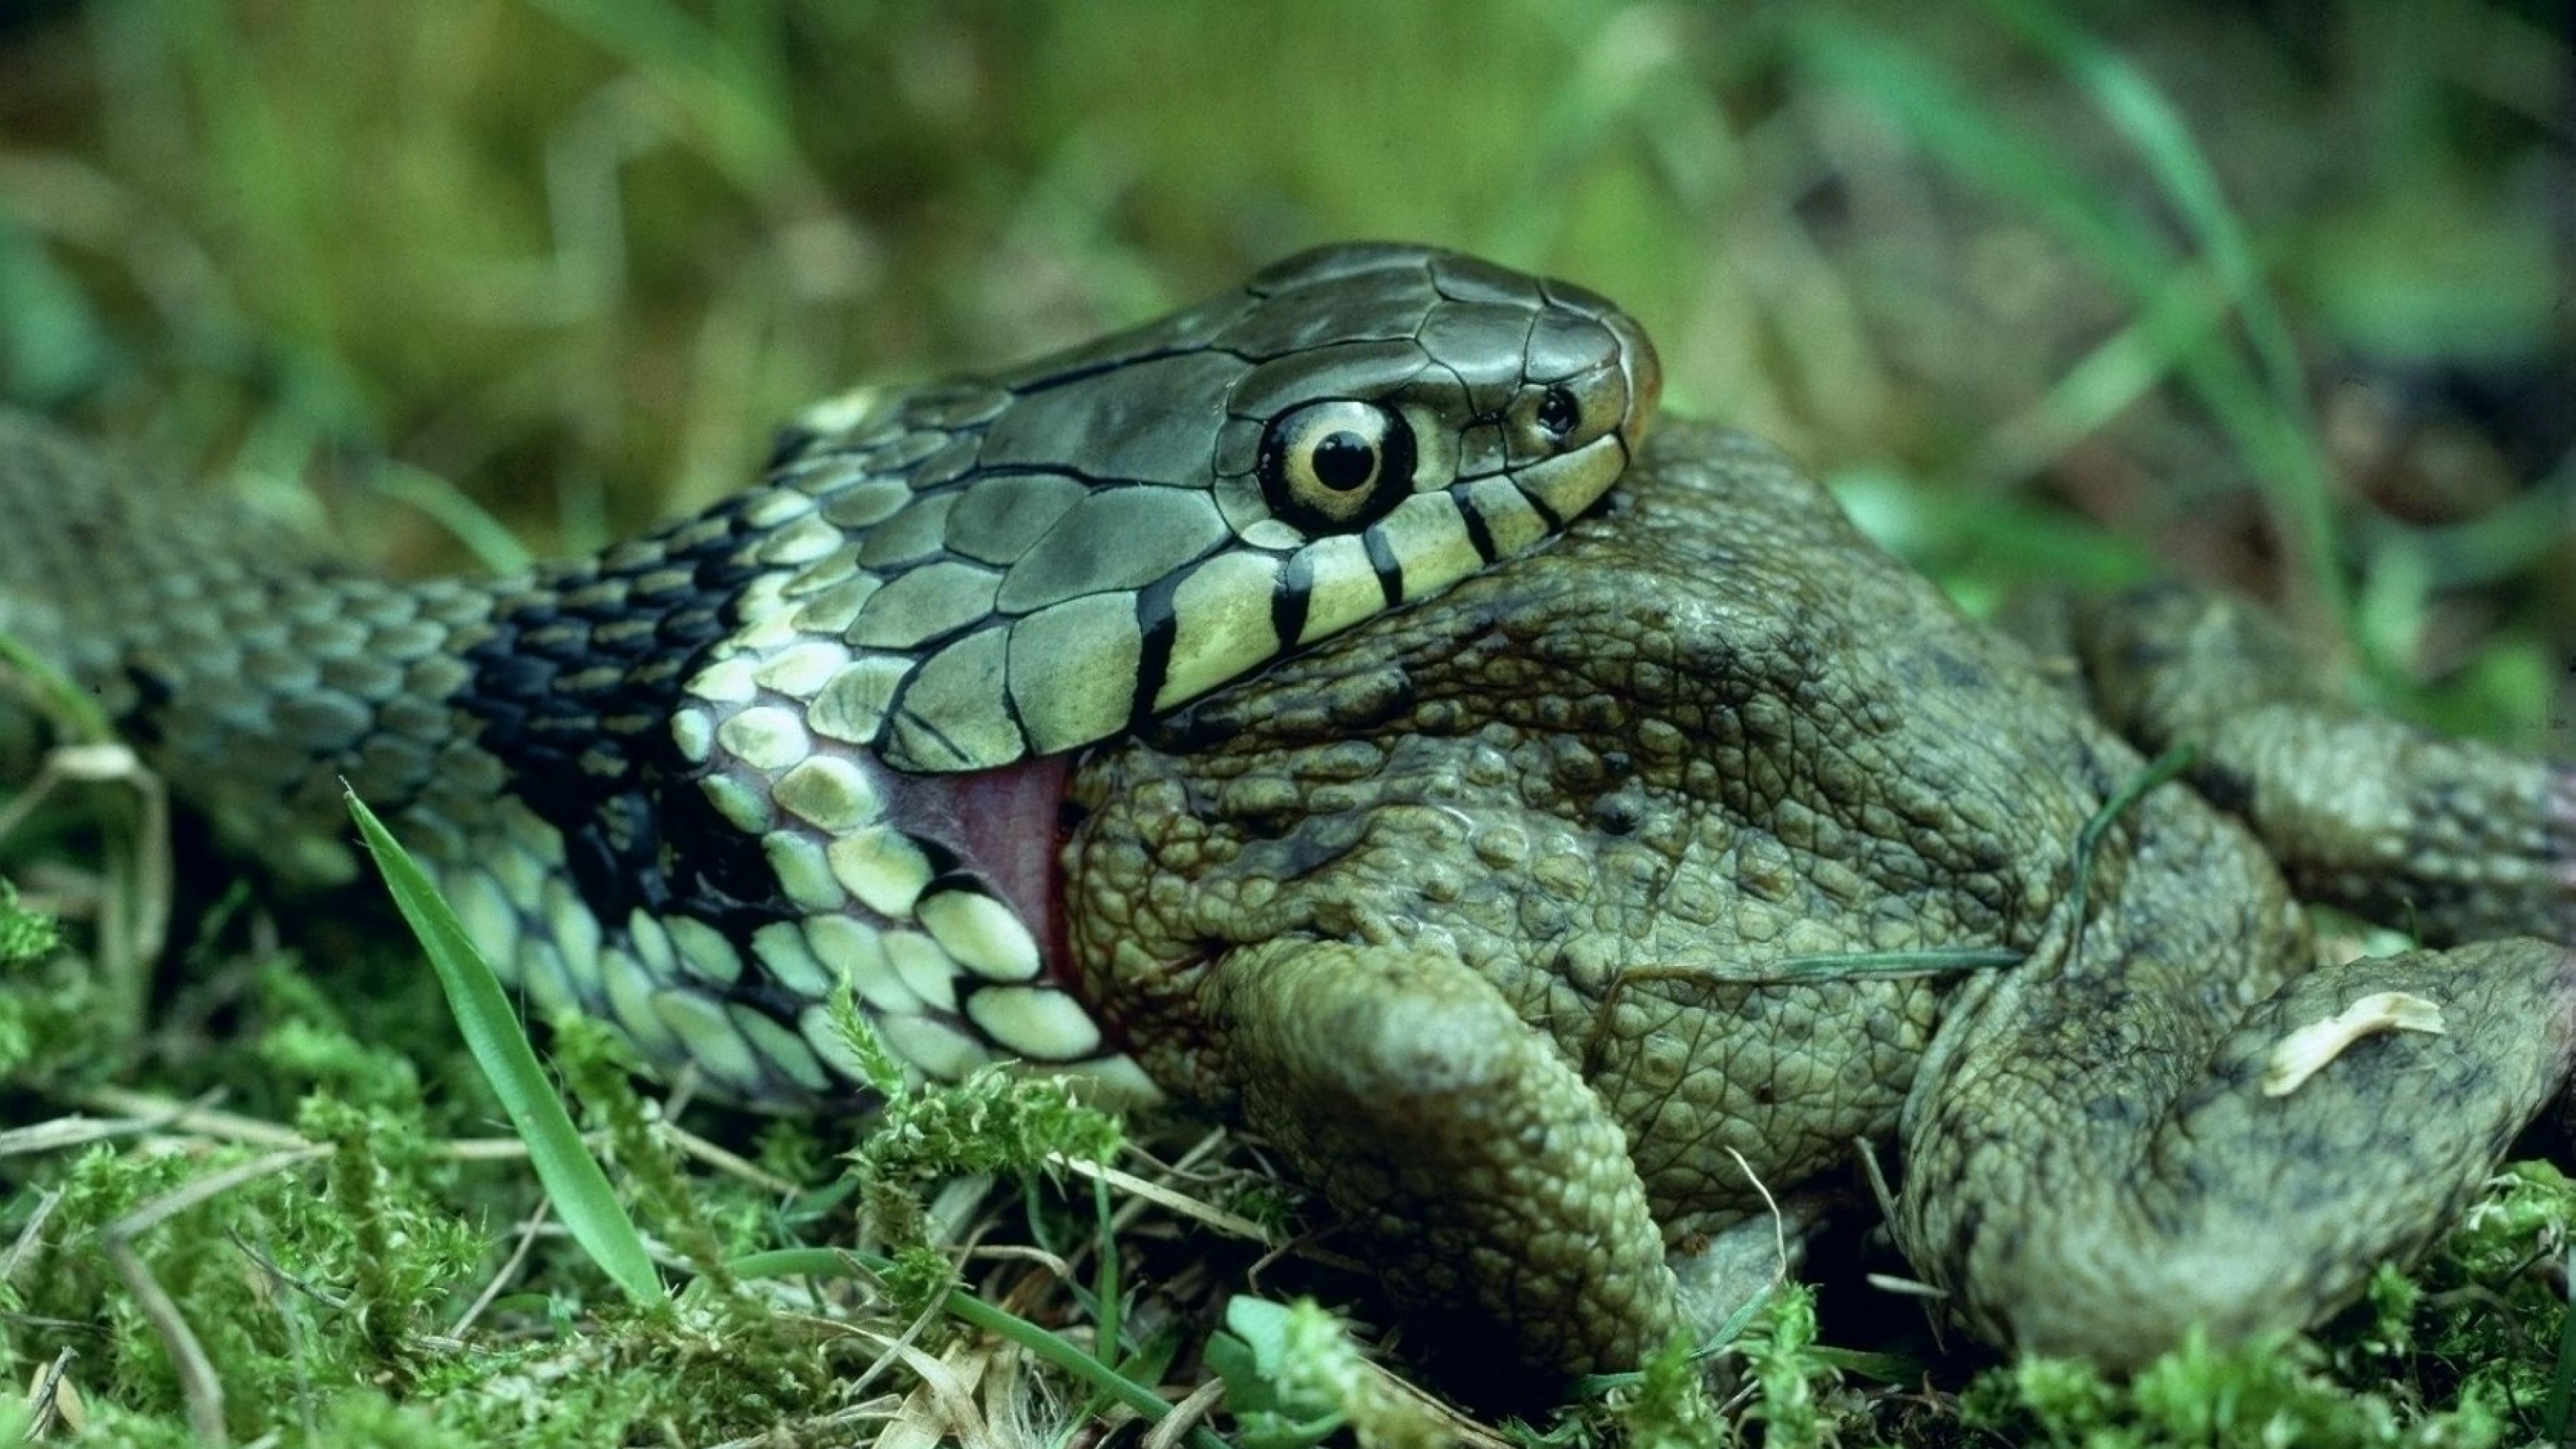 Grass-Snake Wallpapers, 46 Desktop Images of Grass-Snake | Grass ...